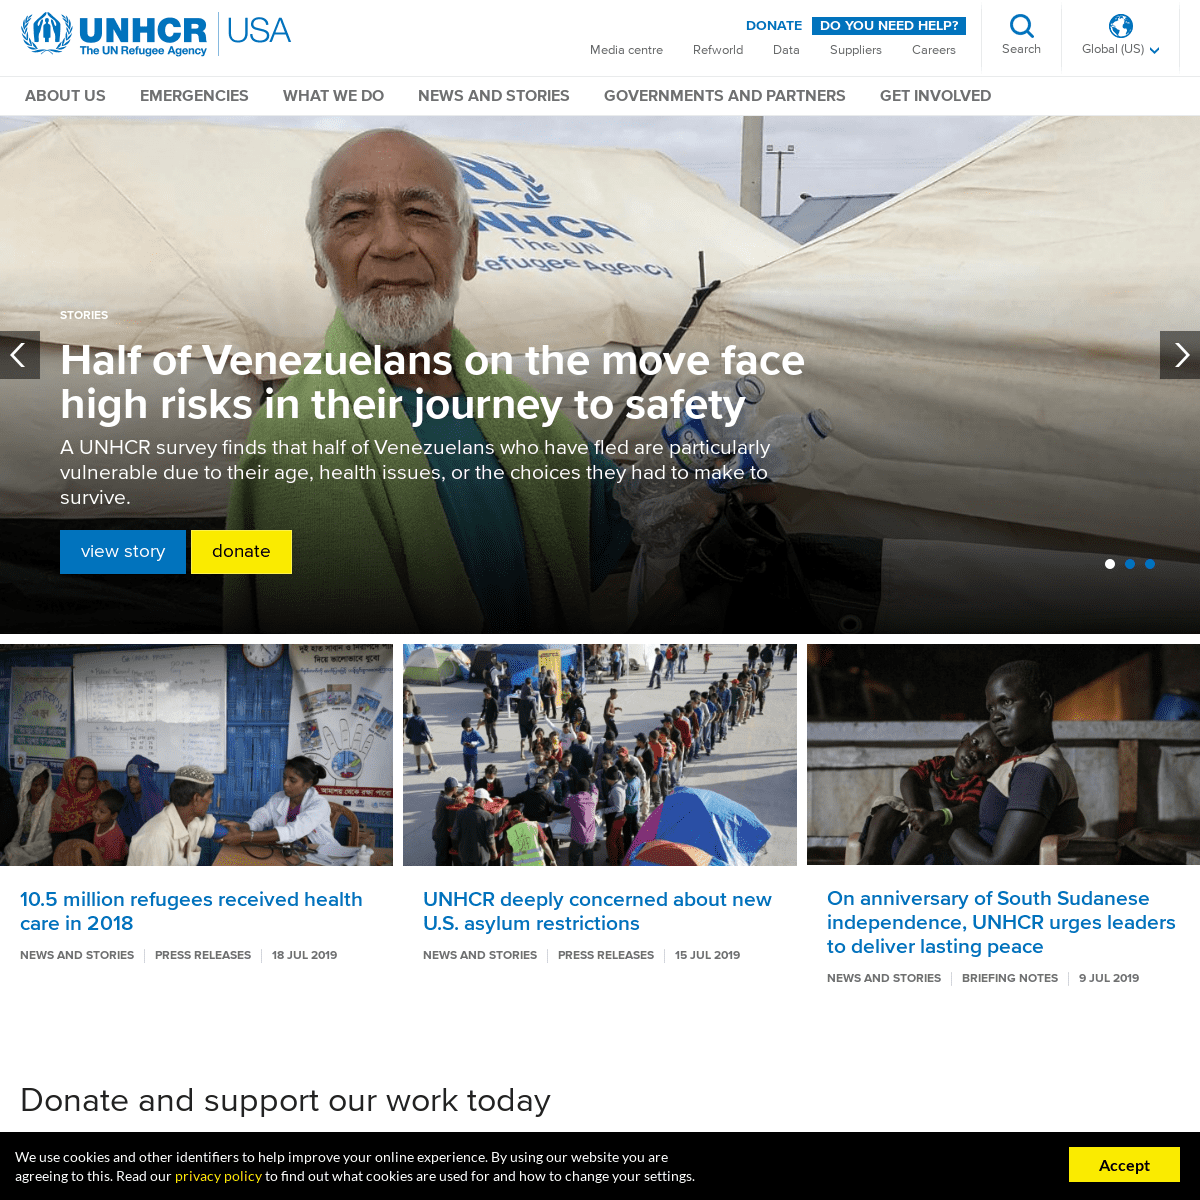 UNHCR - The UN Refugee Agency